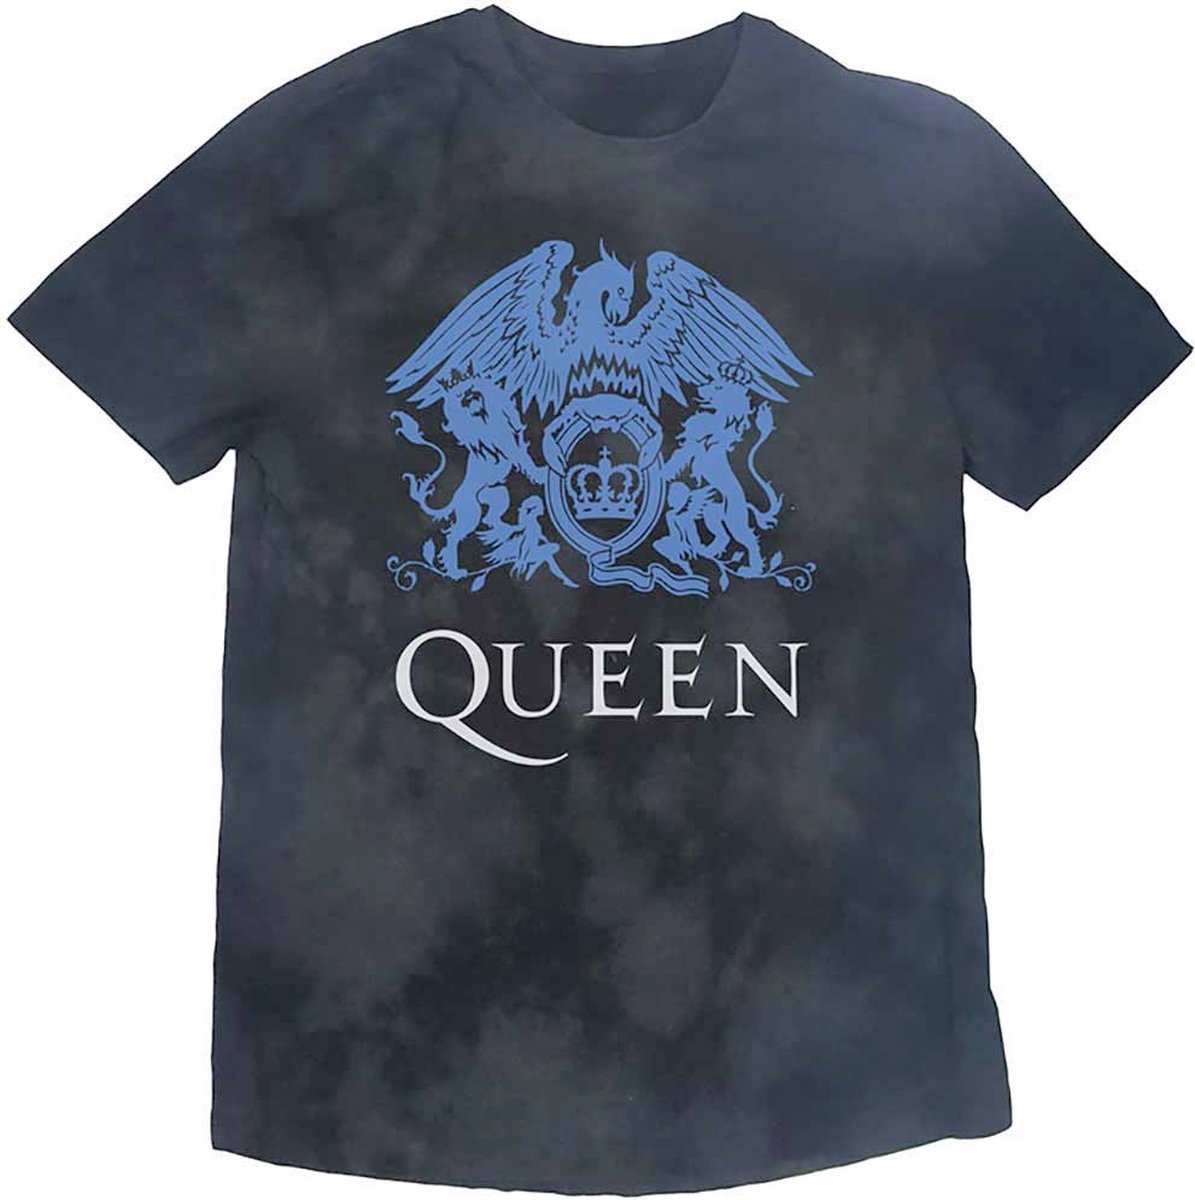 Queen - Blue Crest Kinder T-shirt - Kids tm 12 jaar - Zwart